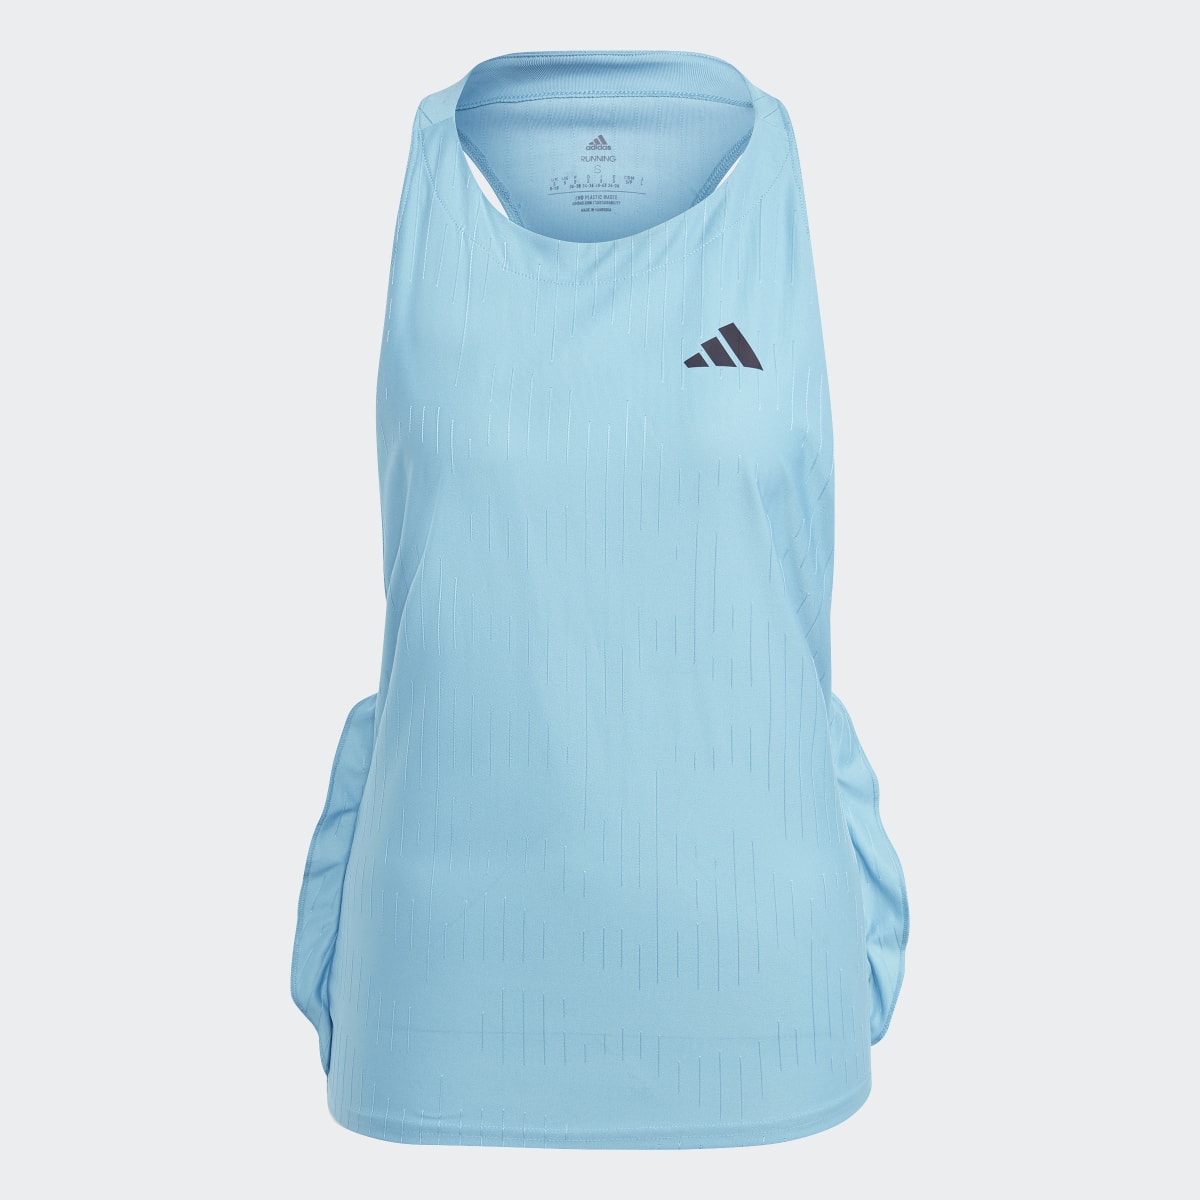 Adidas Camiseta sin mangas Made to be Remade Running. 5